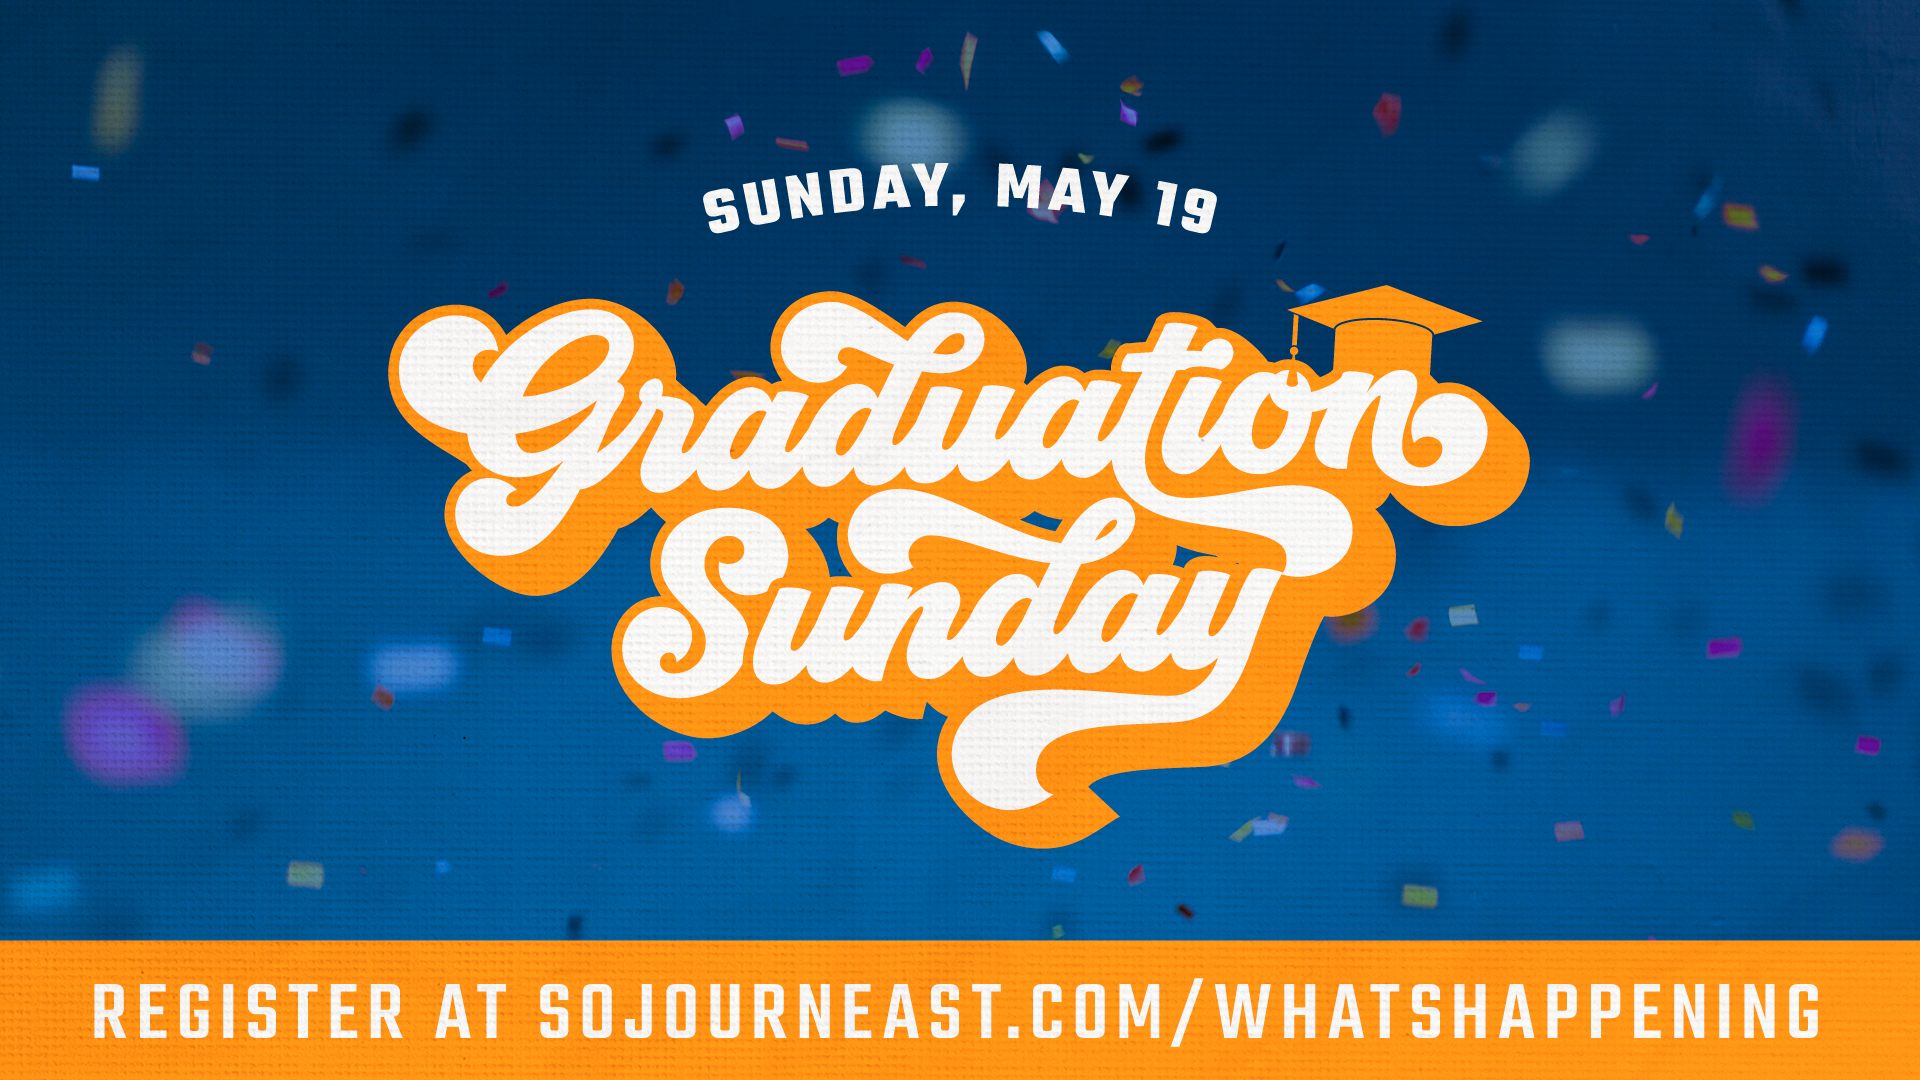 Graduation-Sunday-May-19_1920x1080